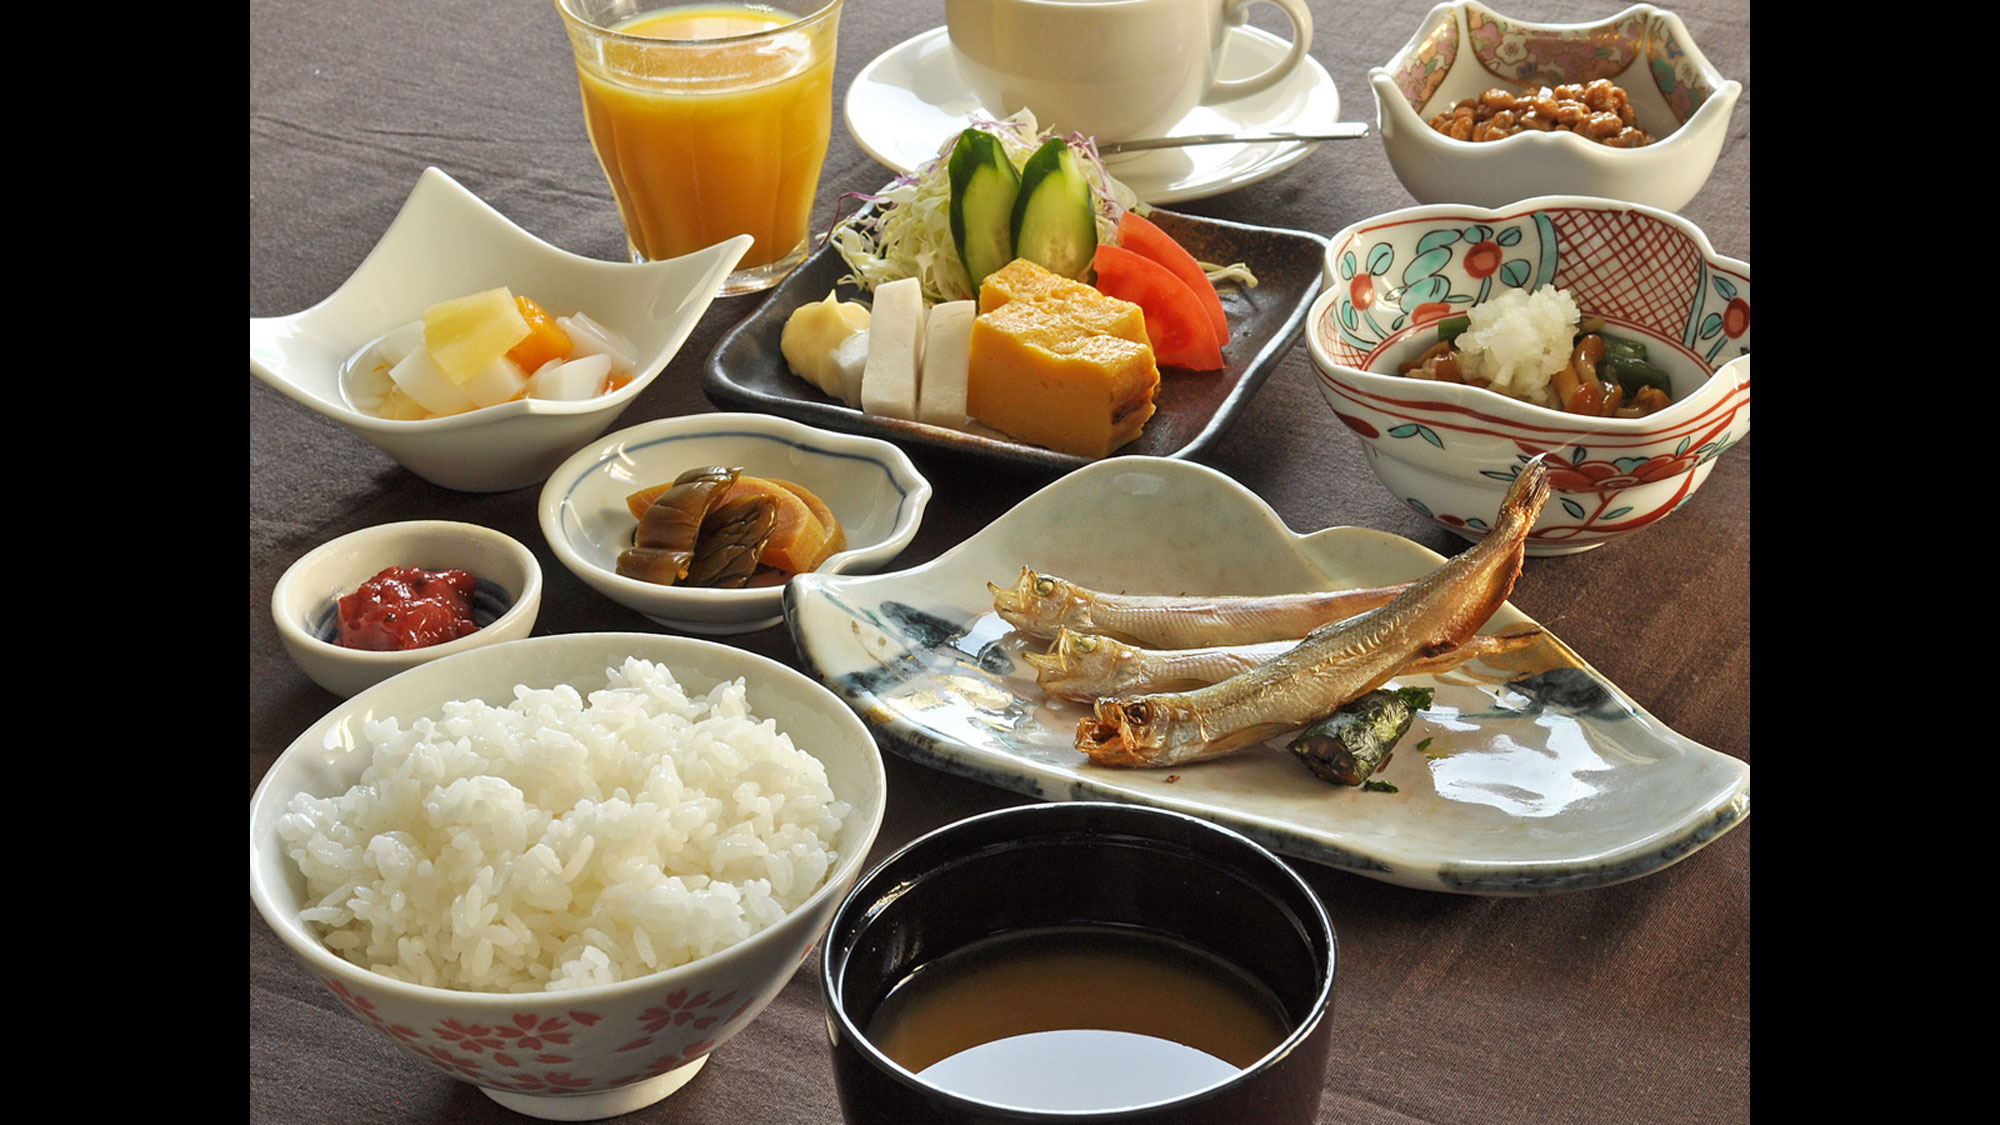 【和朝食一例】お米はむかわ産の「ななつぼし」を使用。地産地消にこだわった和定食です。